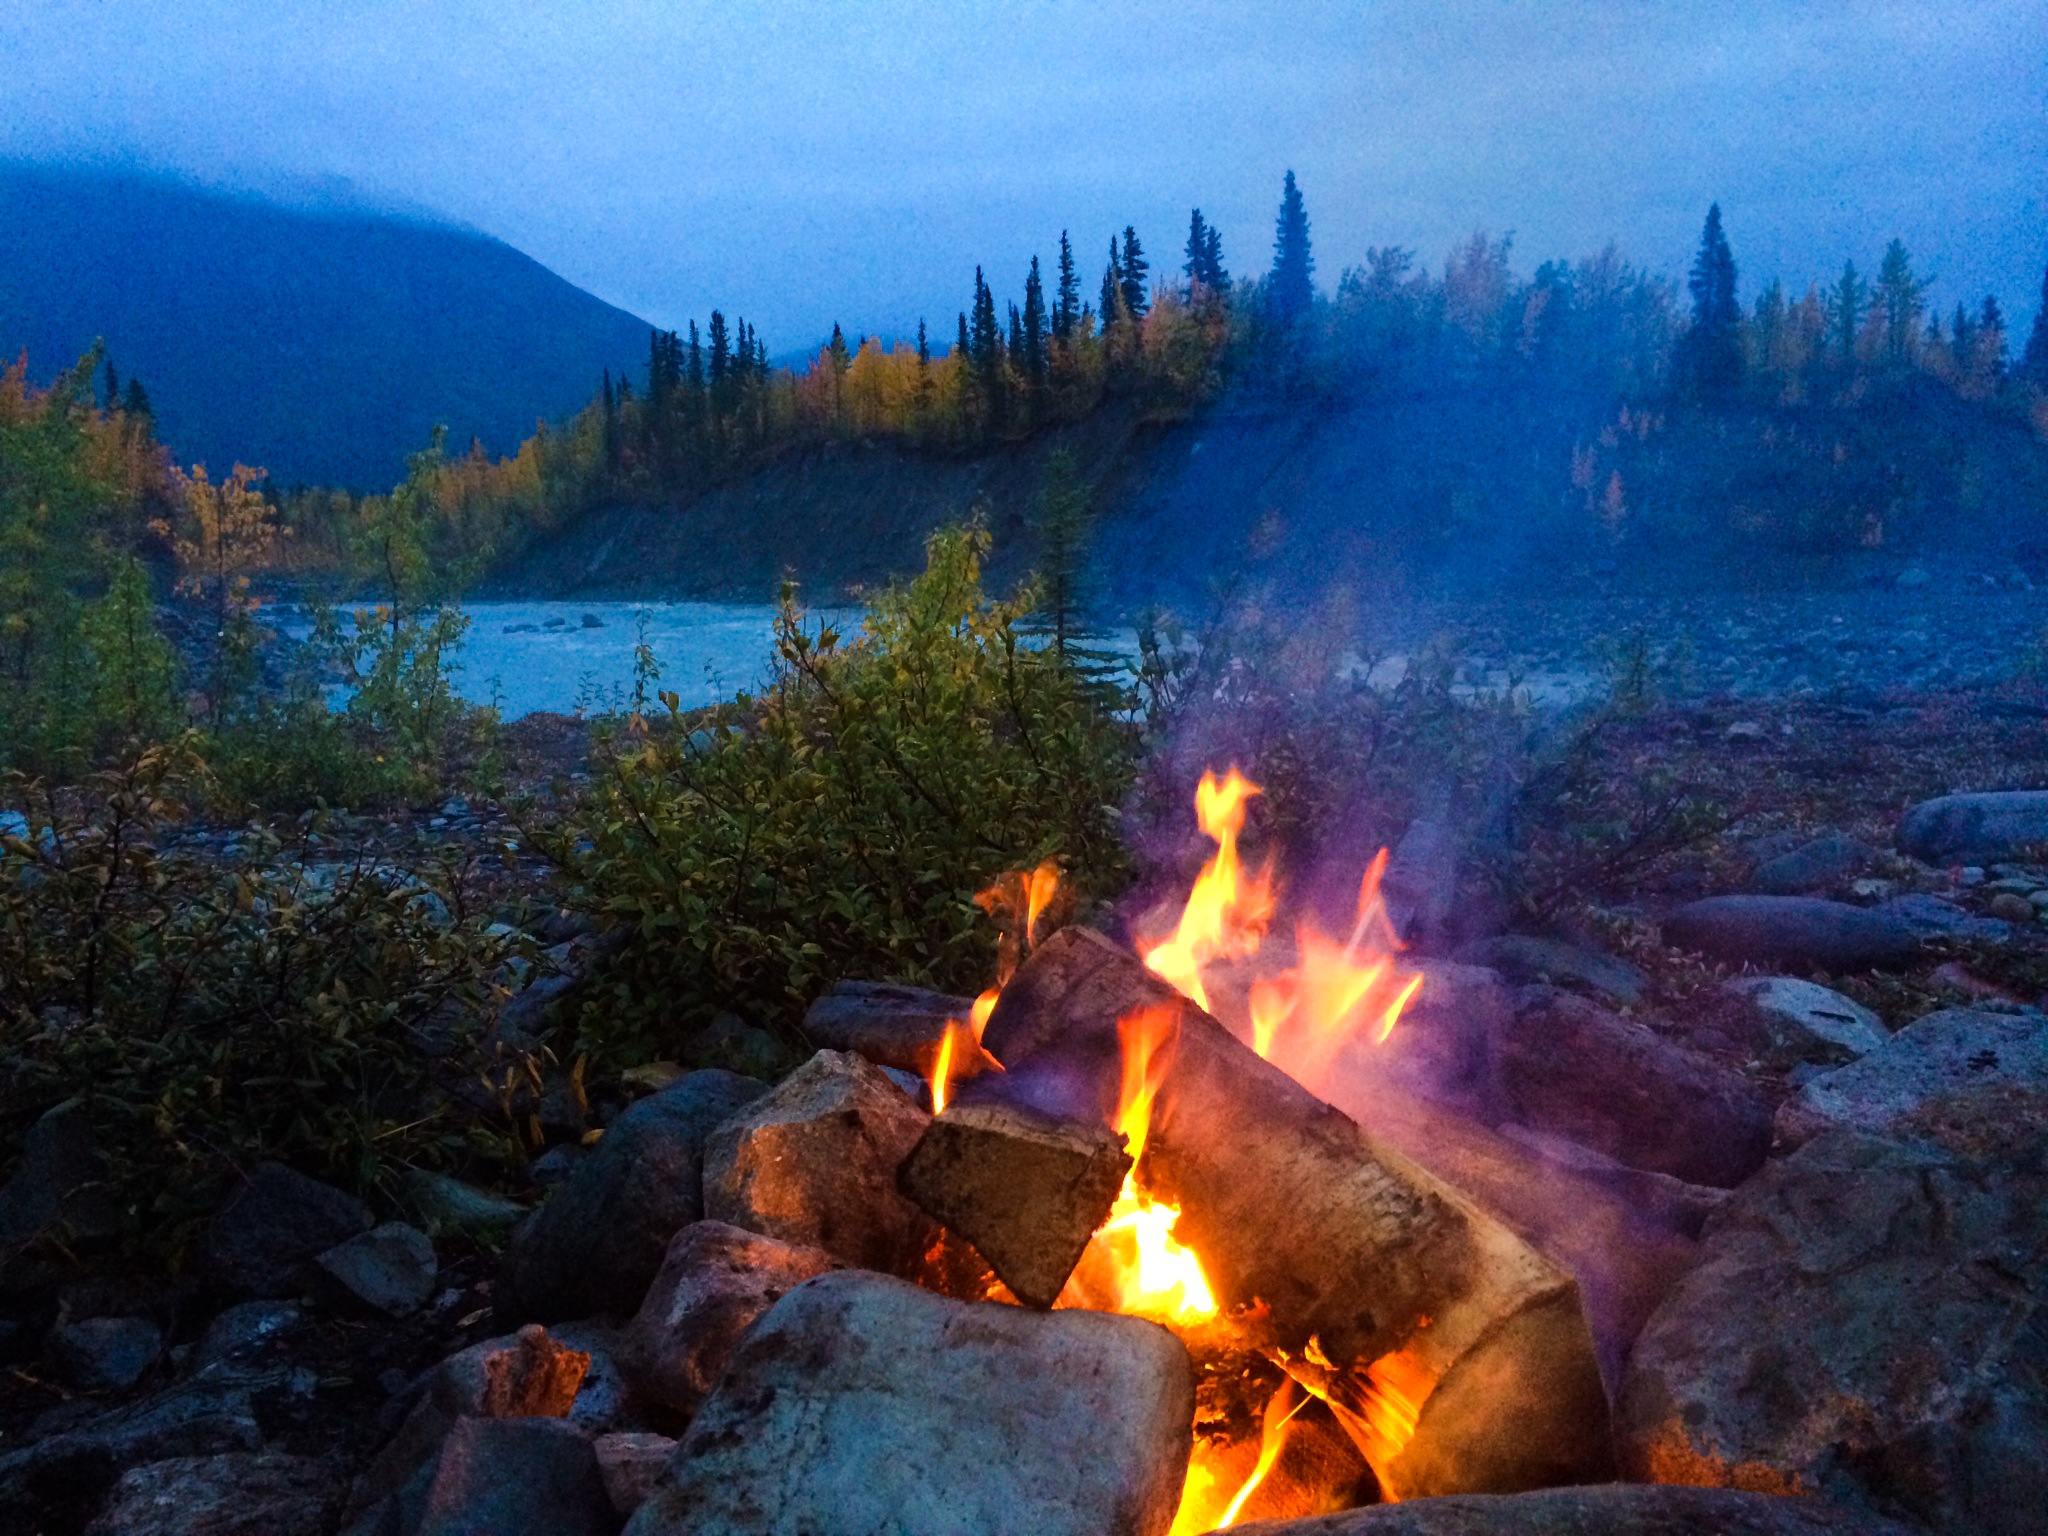 an evening campfire